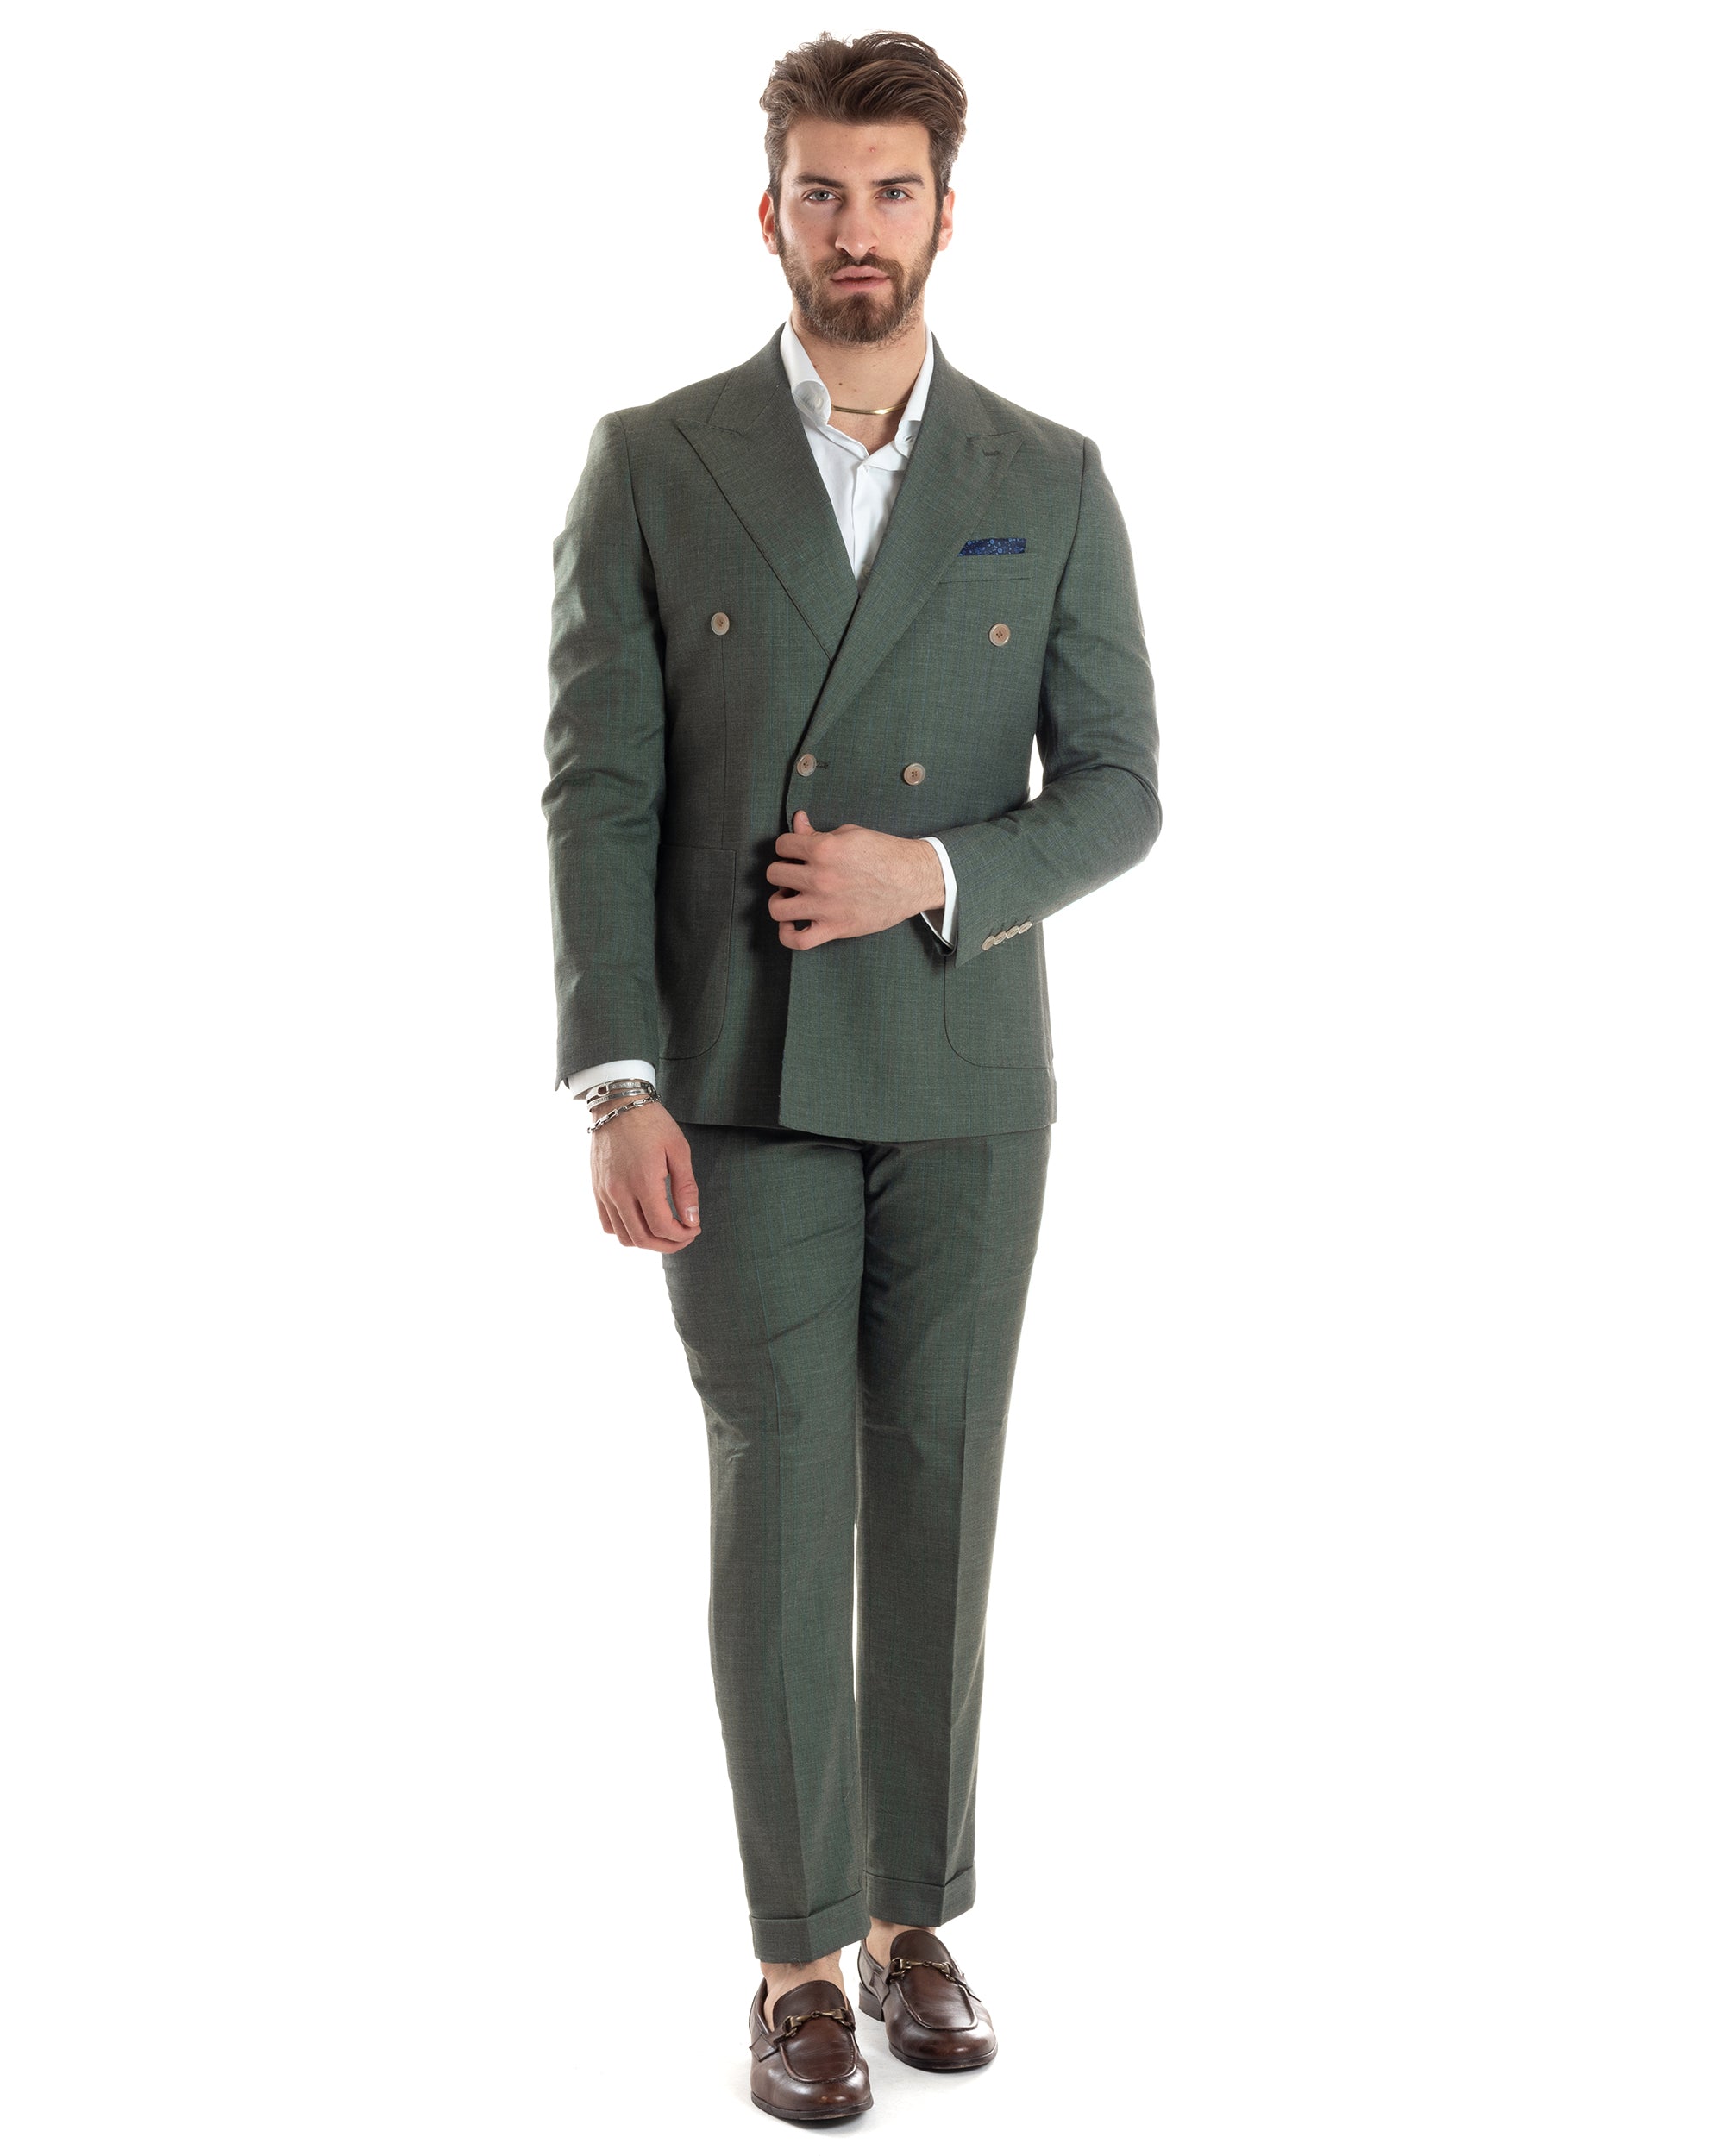 Abito Uomo Doppiopetto Vestito Completo Giacca Pantaloni Verde Gessato Elegante Casual GIOSAL-AE1026A